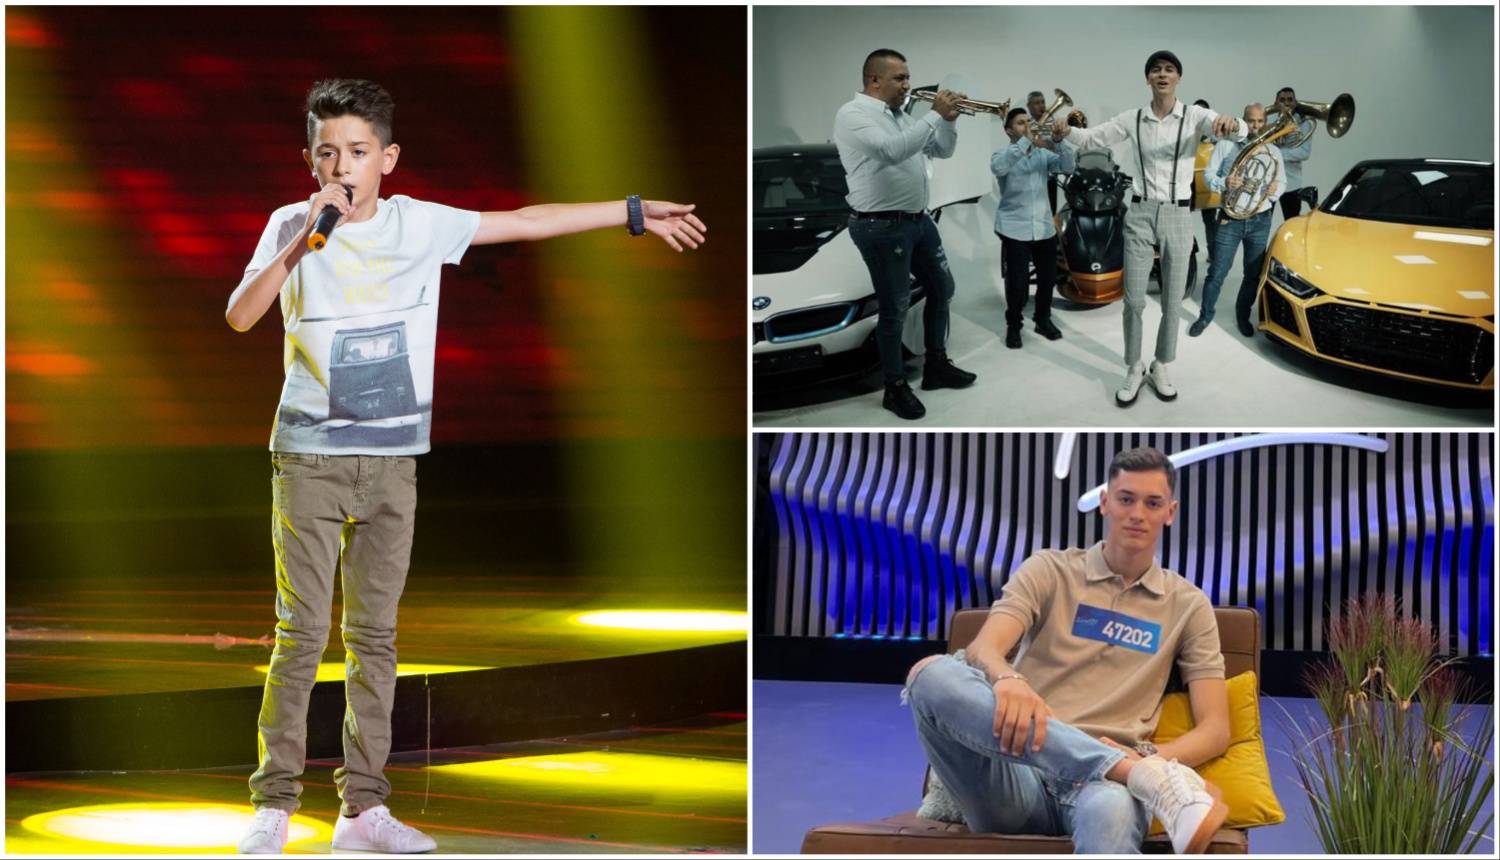 Lučijano Šečić (18) stiže u show 'Superstar': S 10 godina pjevao Halidove hitove u 'Zvjezdicama'